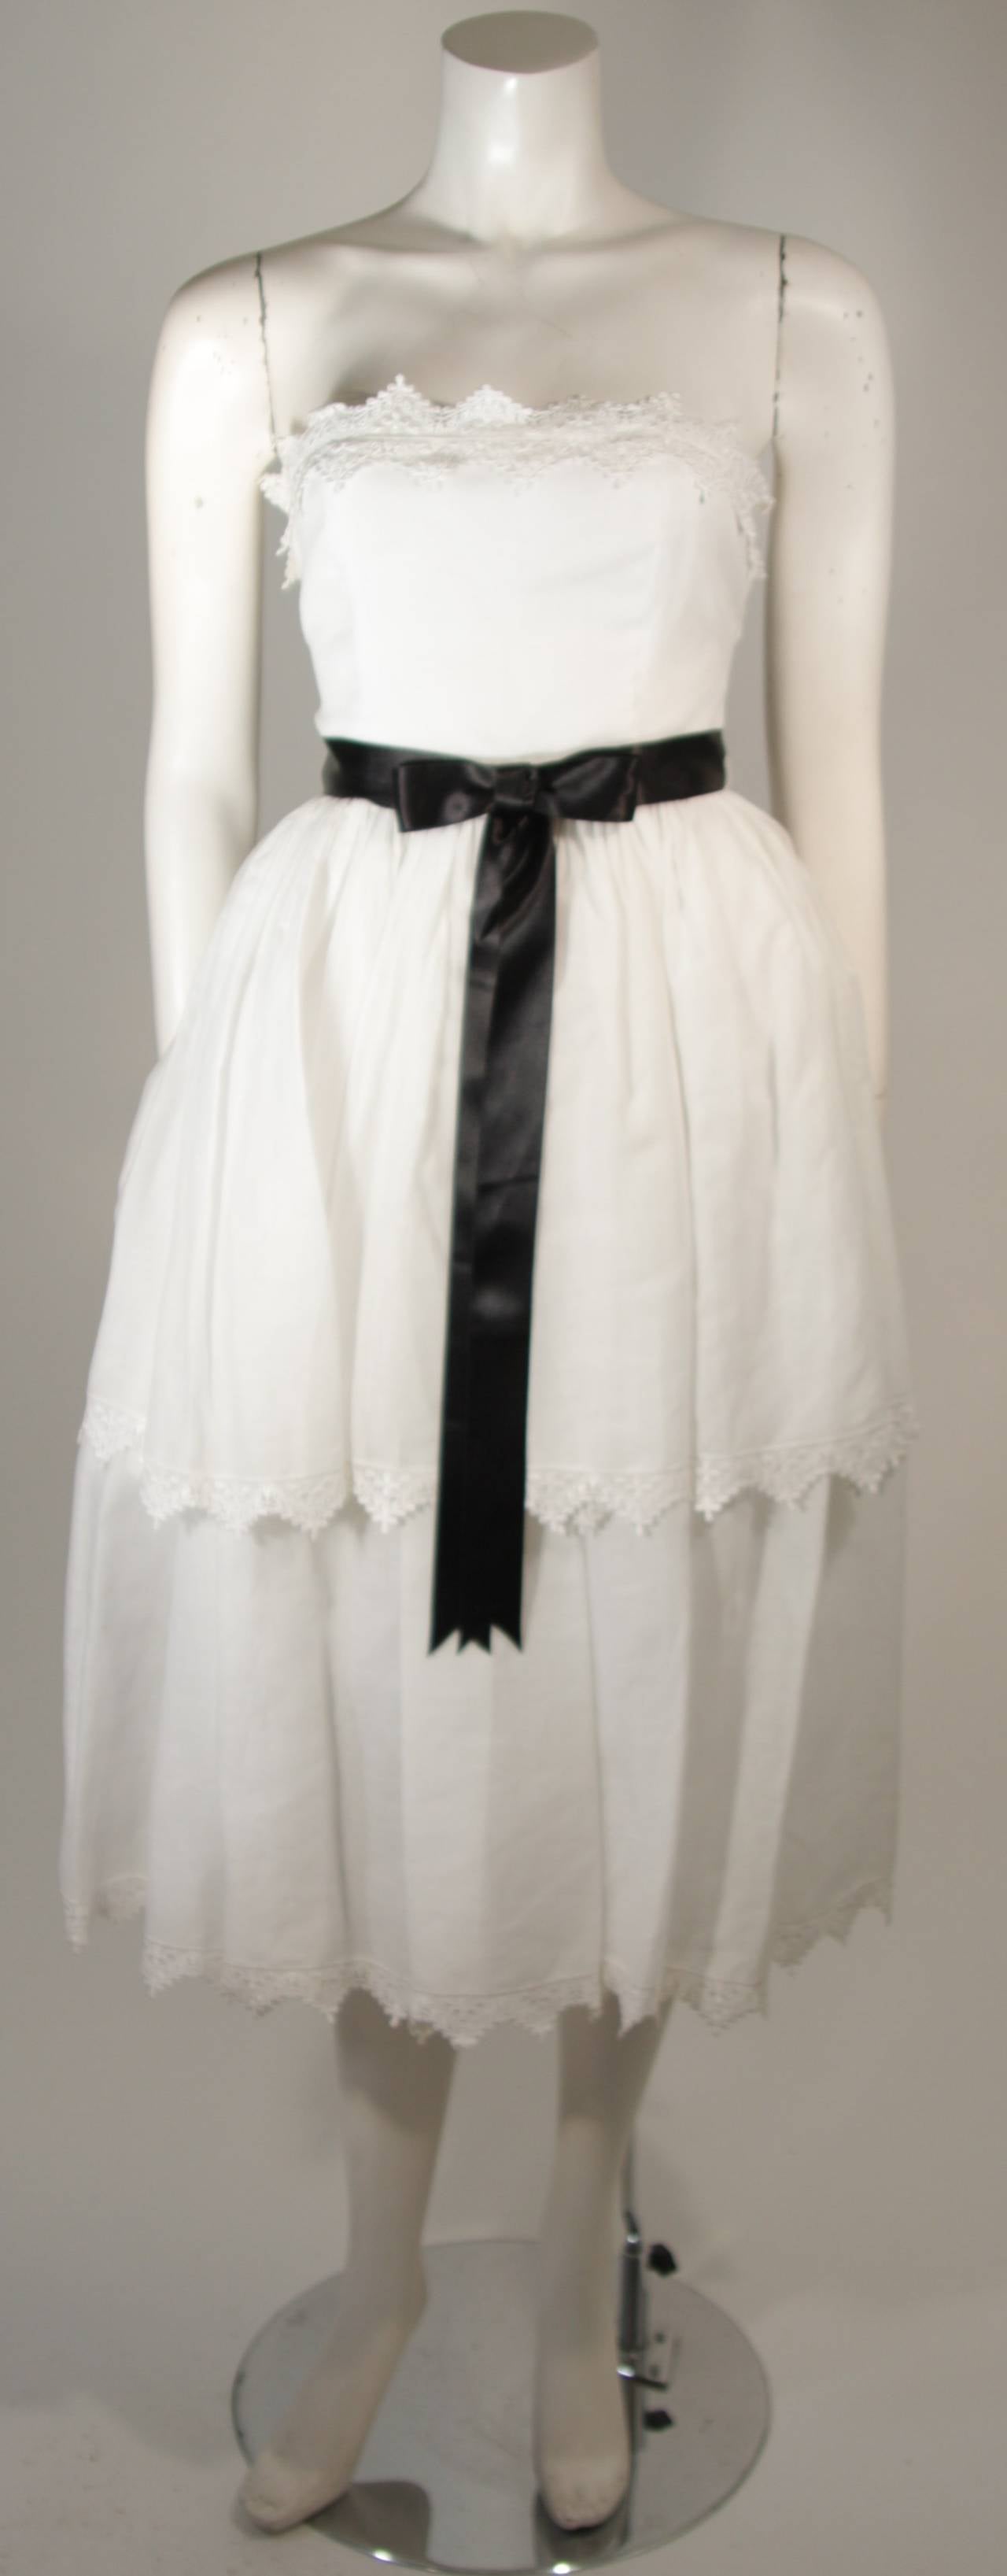 Cette robe Albert Capraro est composée d'un coton blanc et présente une bordure en dentelle. Il y a une fermeture à glissière au centre du dos. En parfait état. 

**Veuillez croiser les mesures pour une précision personnelle. La taille indiquée